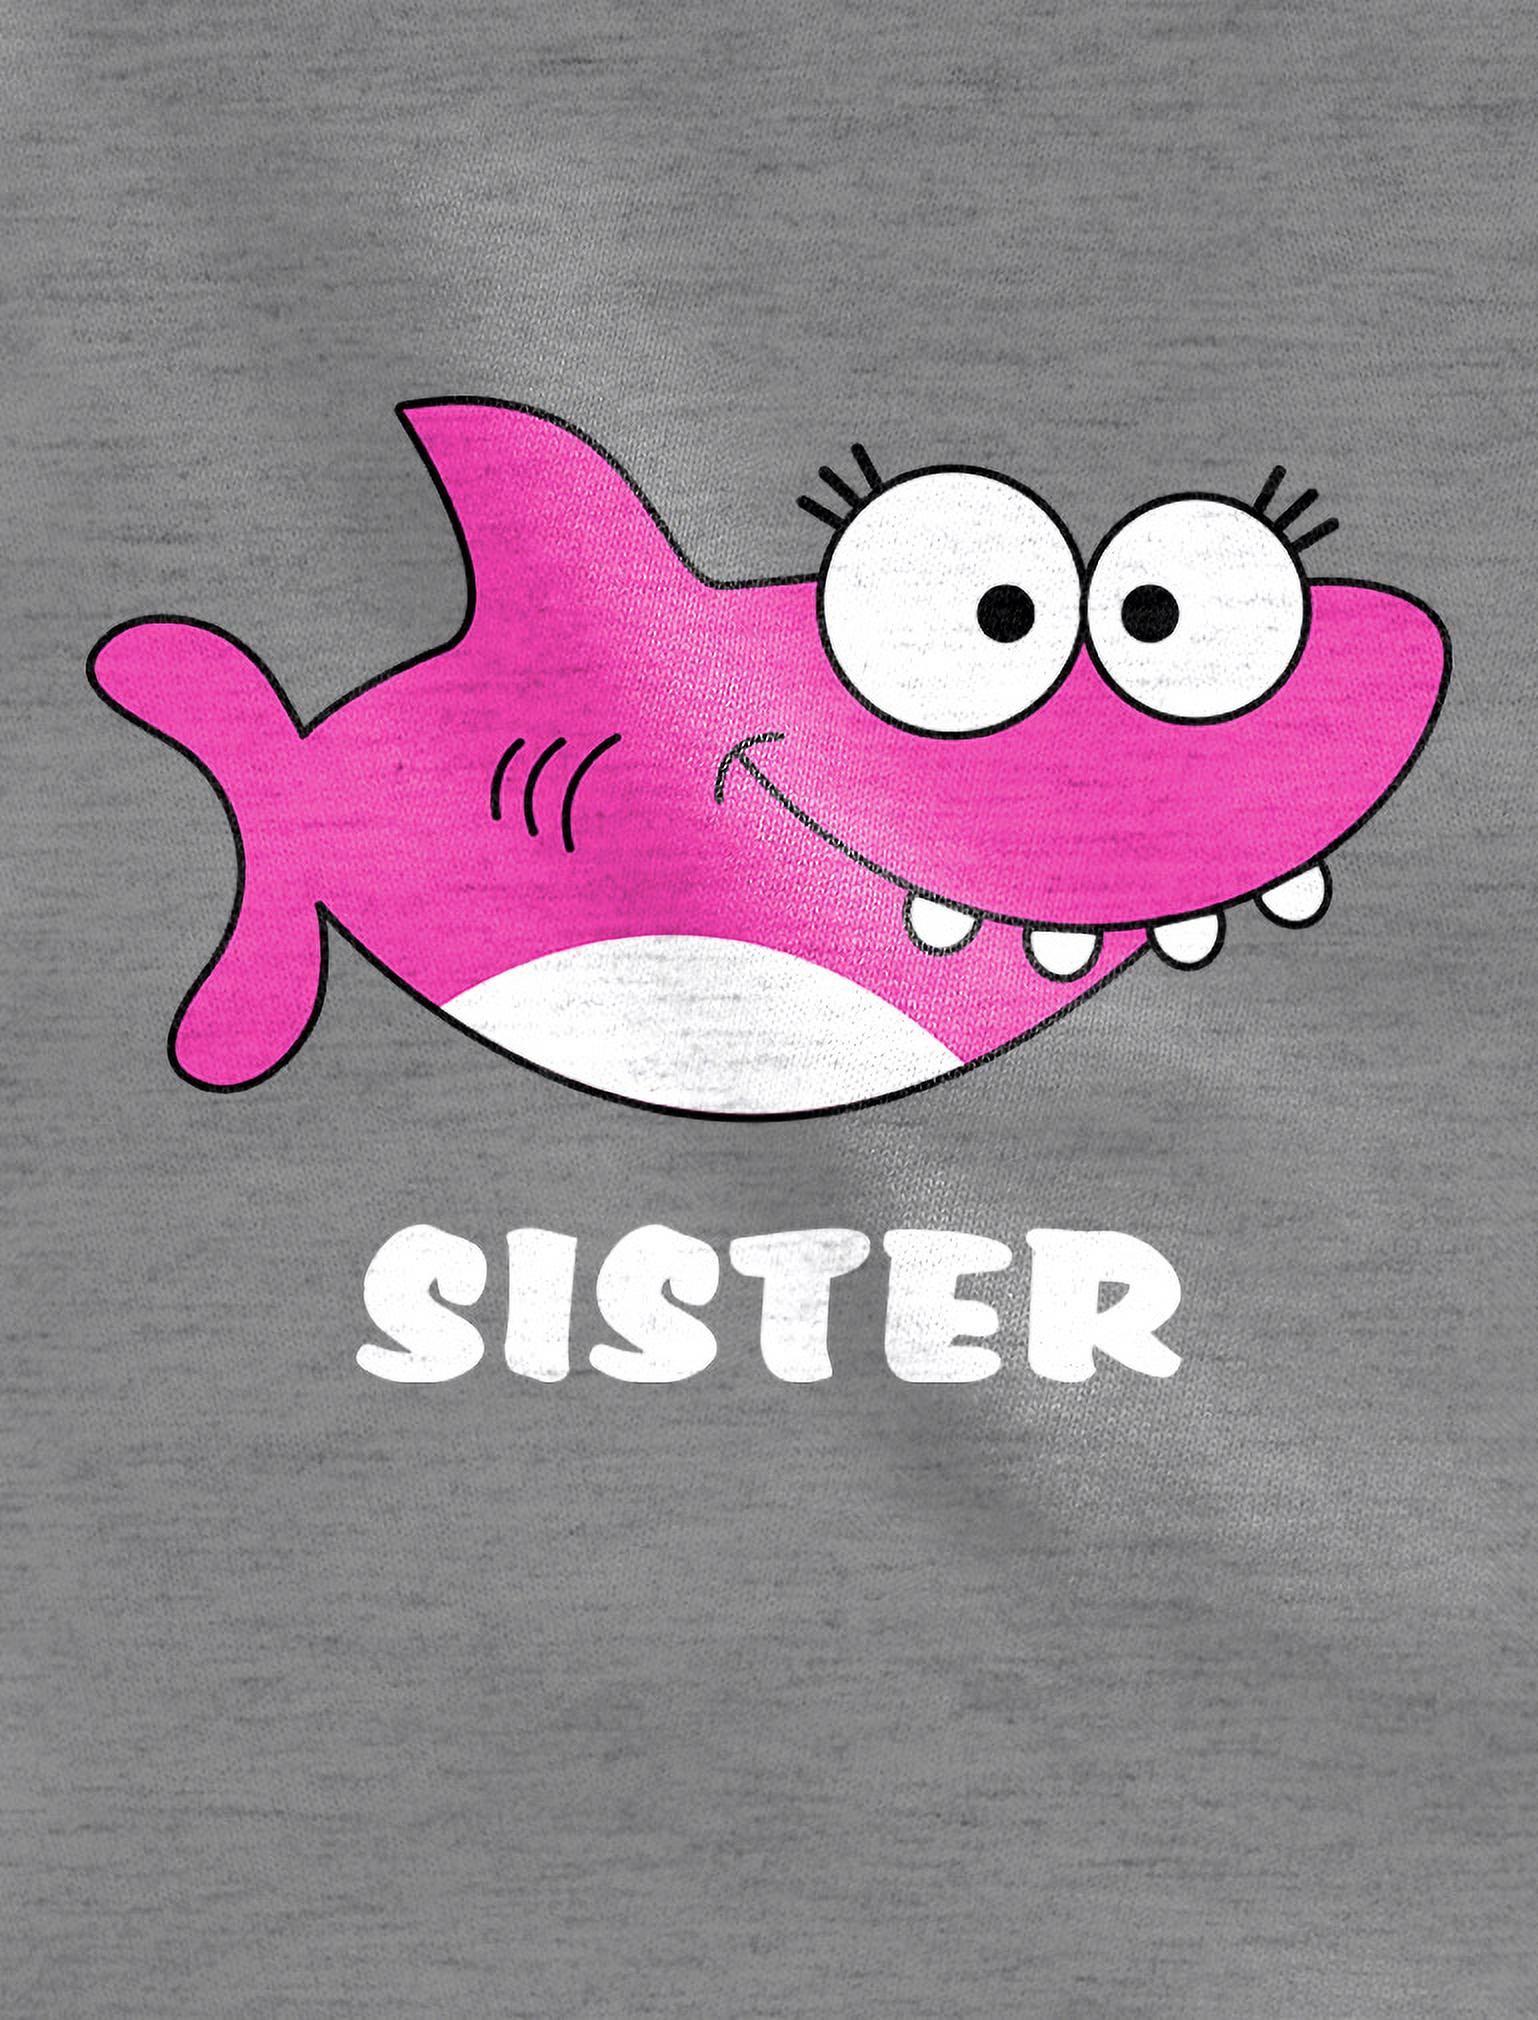 Tstars Girls Big Sister Shirt Lovely Shark Shirt for Sister Best Sister Cute B Day Gifts for Sister Graphic Tee Gift for Big Sister Funny Sis Toddler Kids Girls Fitted Child Birthday T Shirt - image 2 of 4